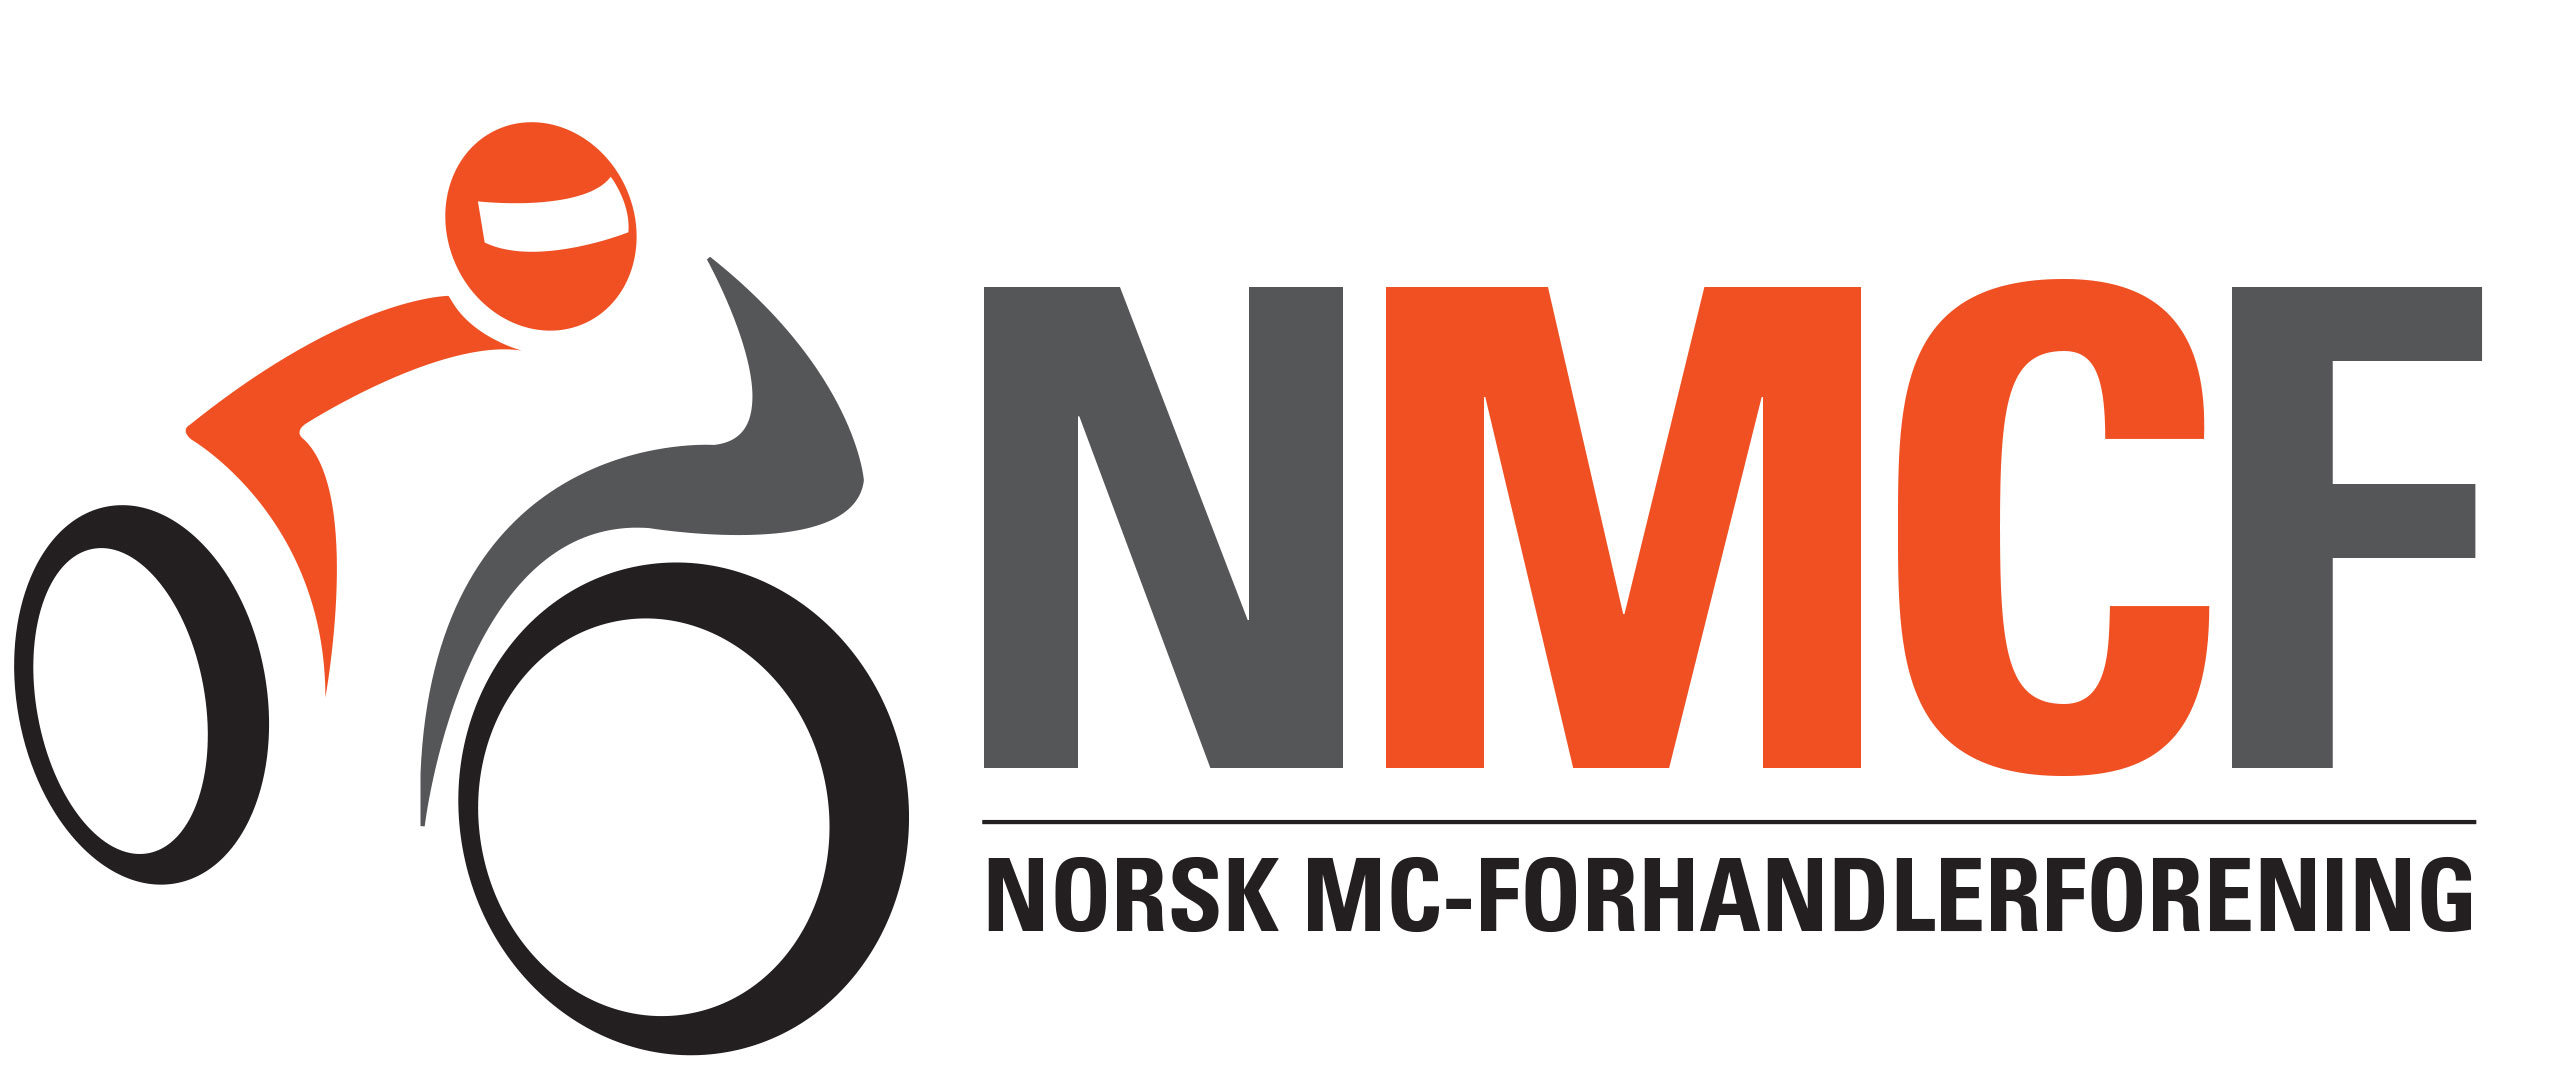 Norsk MC Forhandlerforening logo